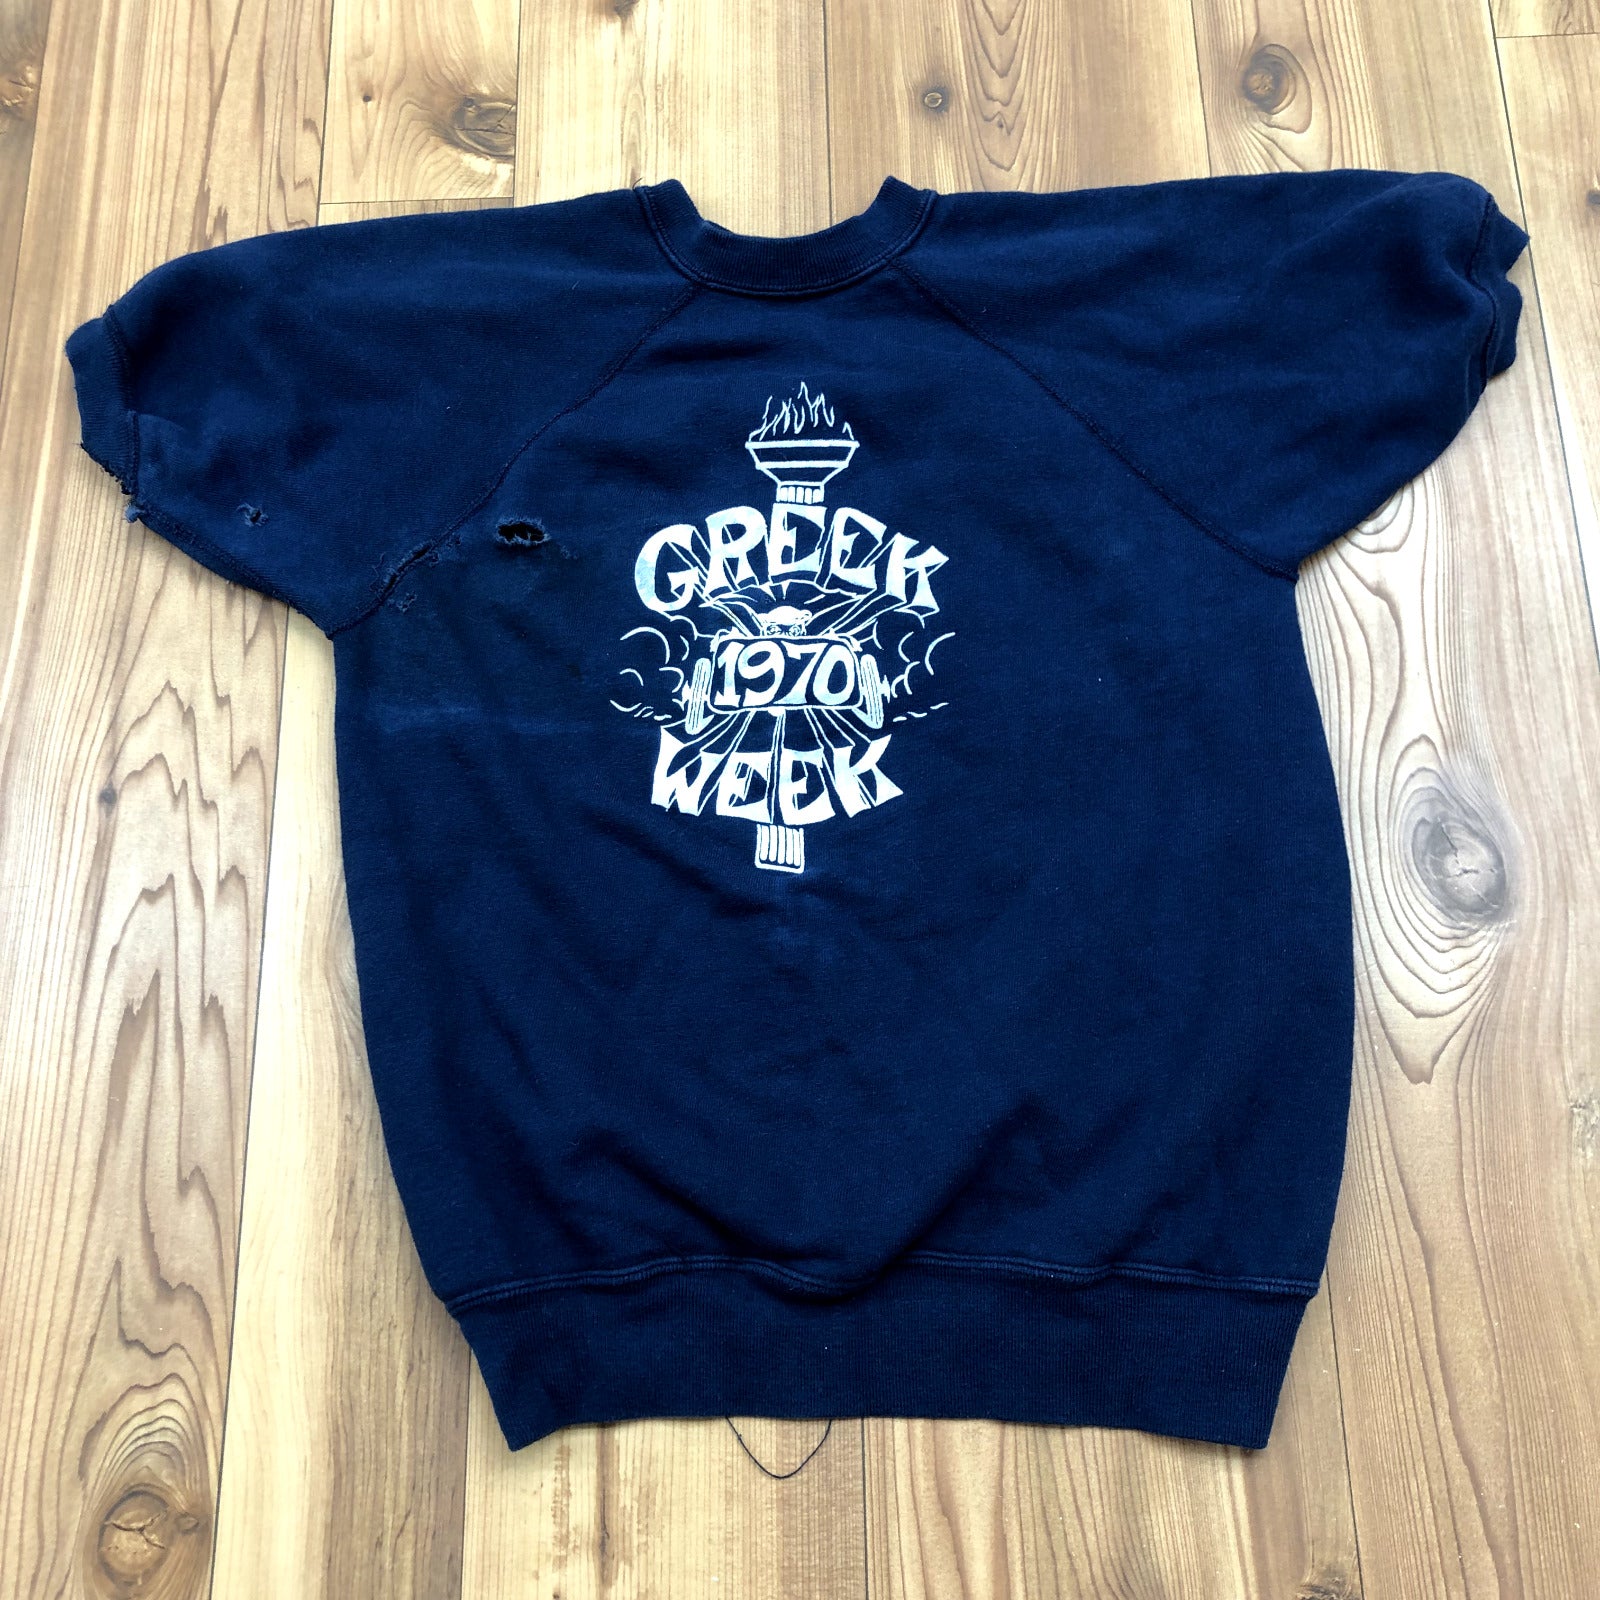 Vintage FSSC Dark Blue Short Sleeve "GREEK WEEK 1970" Sweatshirt Women Size M